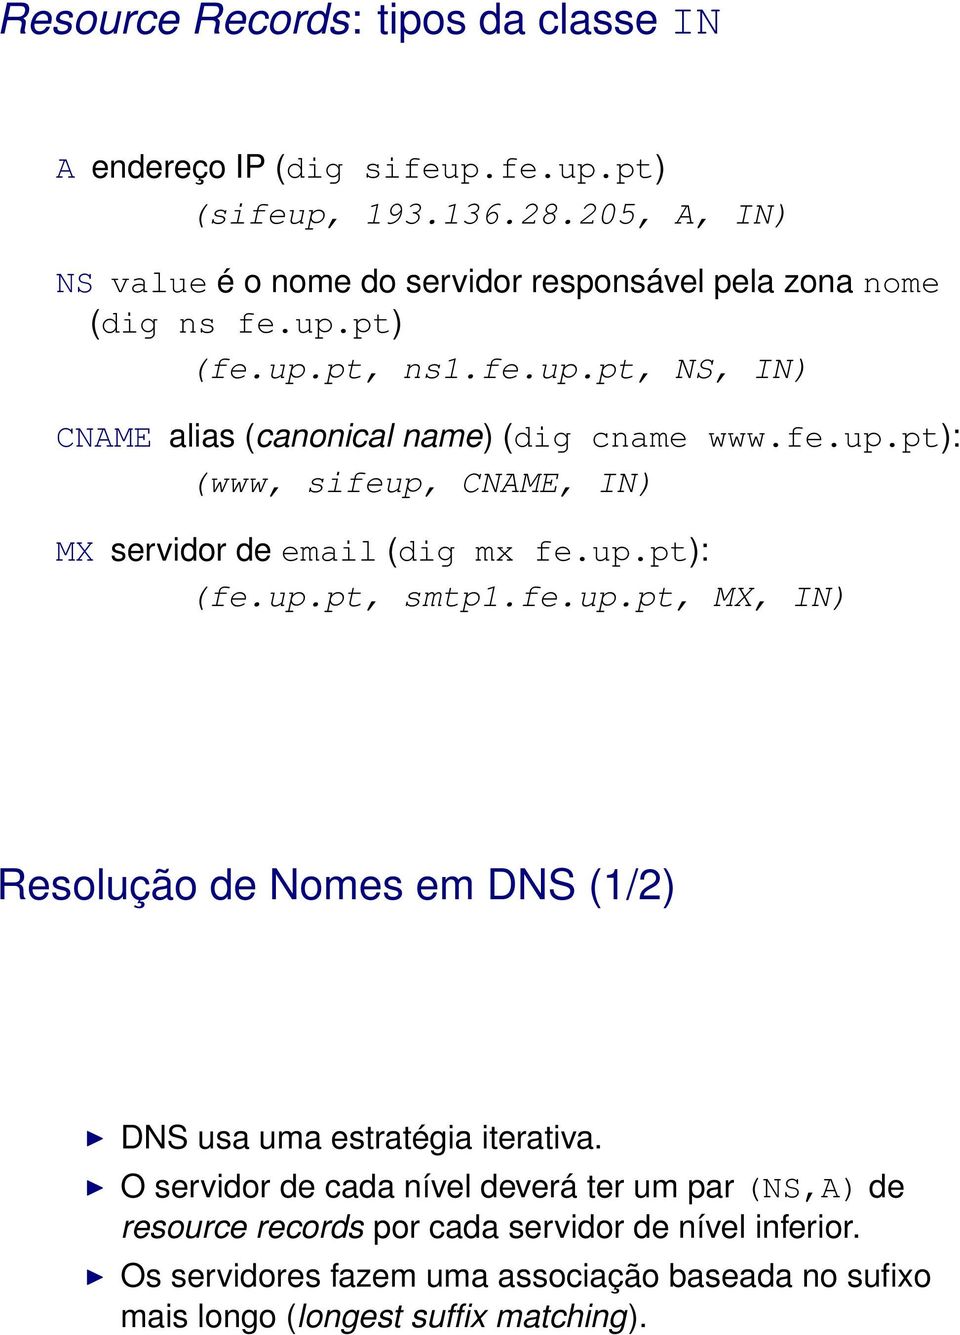 fe.up.pt): (www, sifeup, CNAME, IN) MX servidor de email (dig mx fe.up.pt): (fe.up.pt, smtp1.fe.up.pt, MX, IN) Resolução de Nomes em DNS (1/2) DNS usa uma estratégia iterativa.